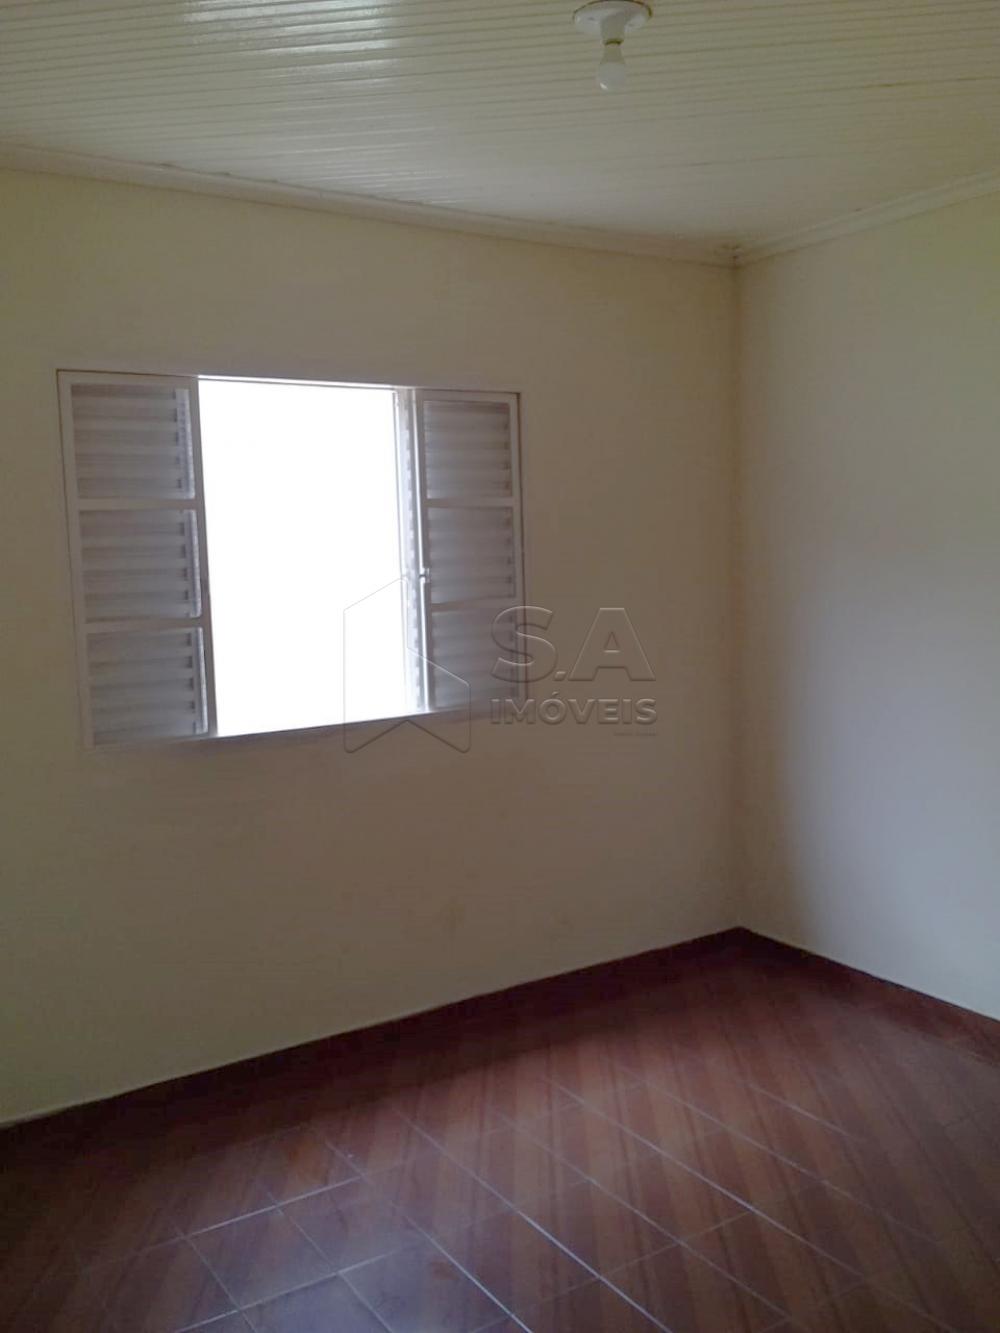 Comprar Casa / Padrão em Botucatu R$ 450.000,00 - Foto 7